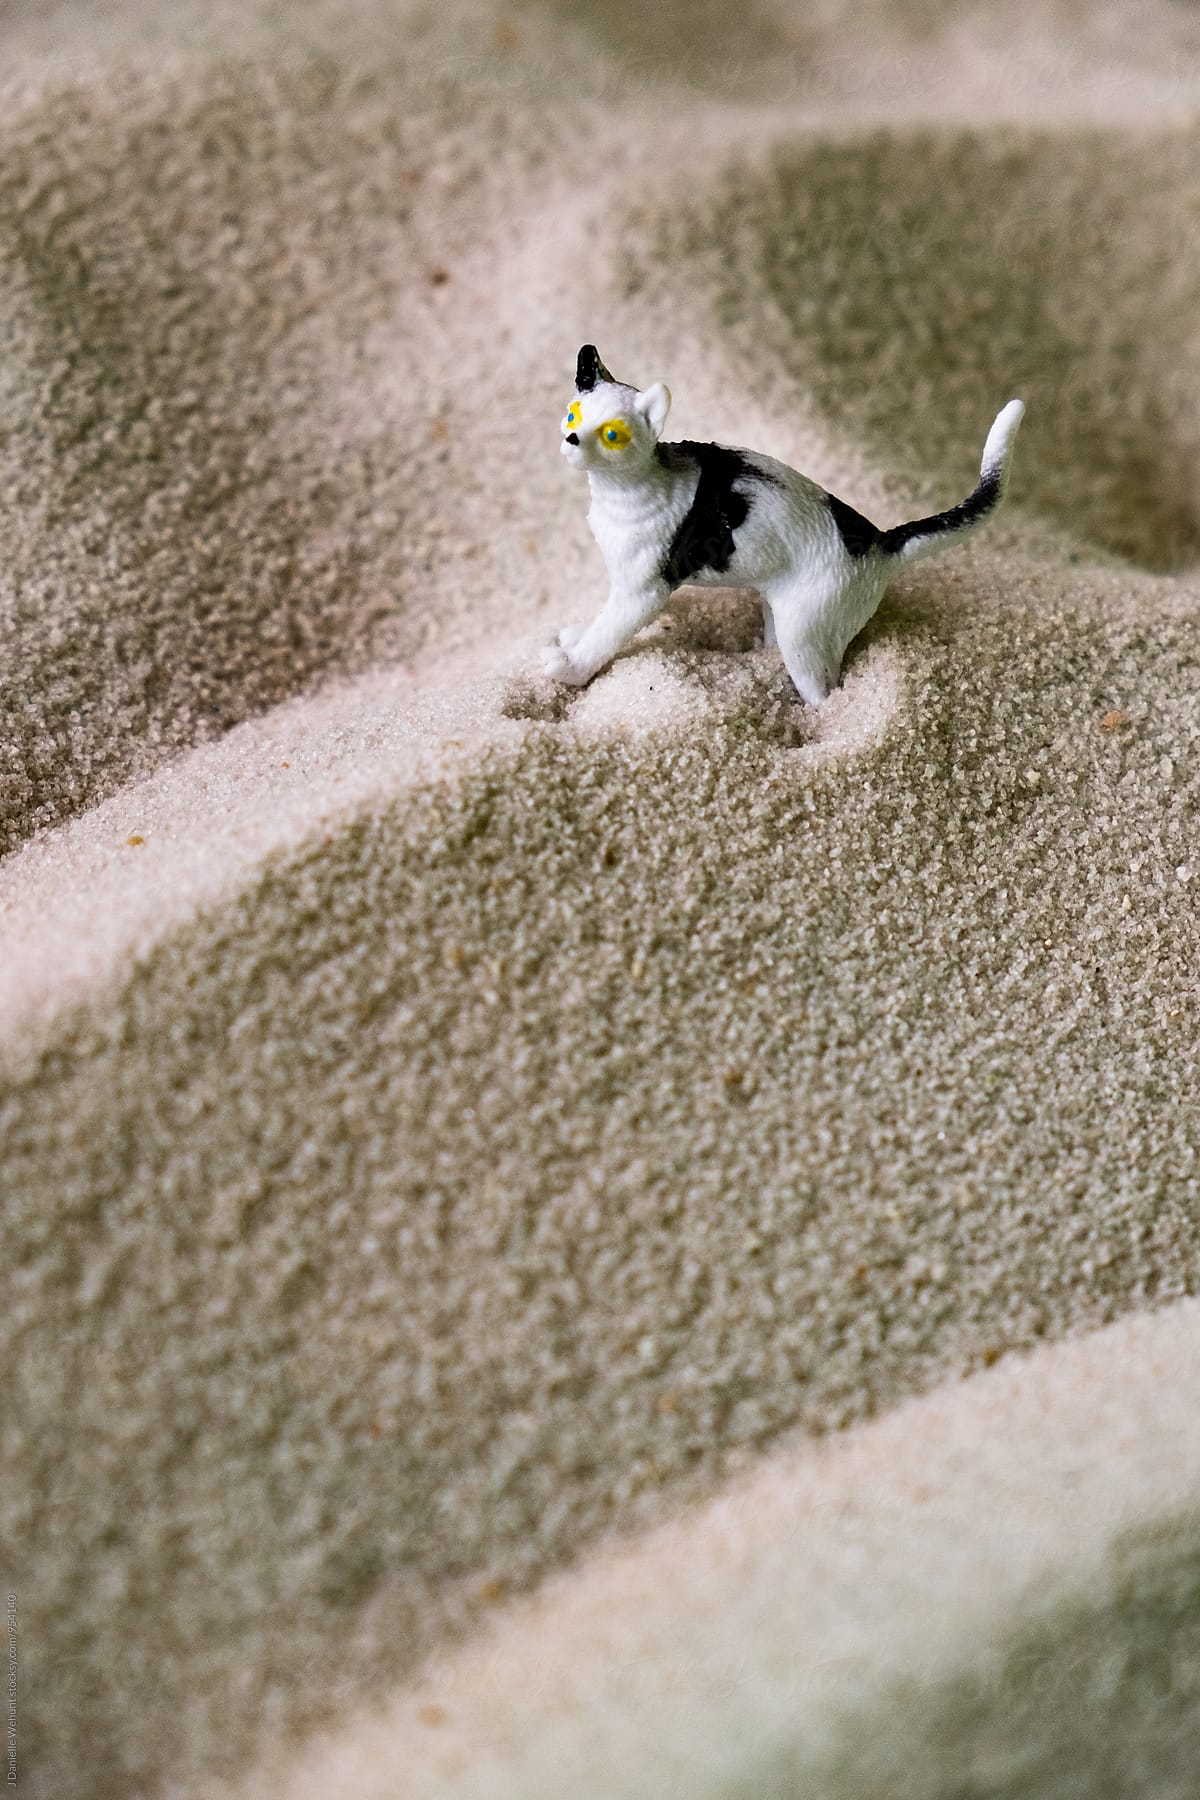 Miniature Plastic Toy Cat in sand